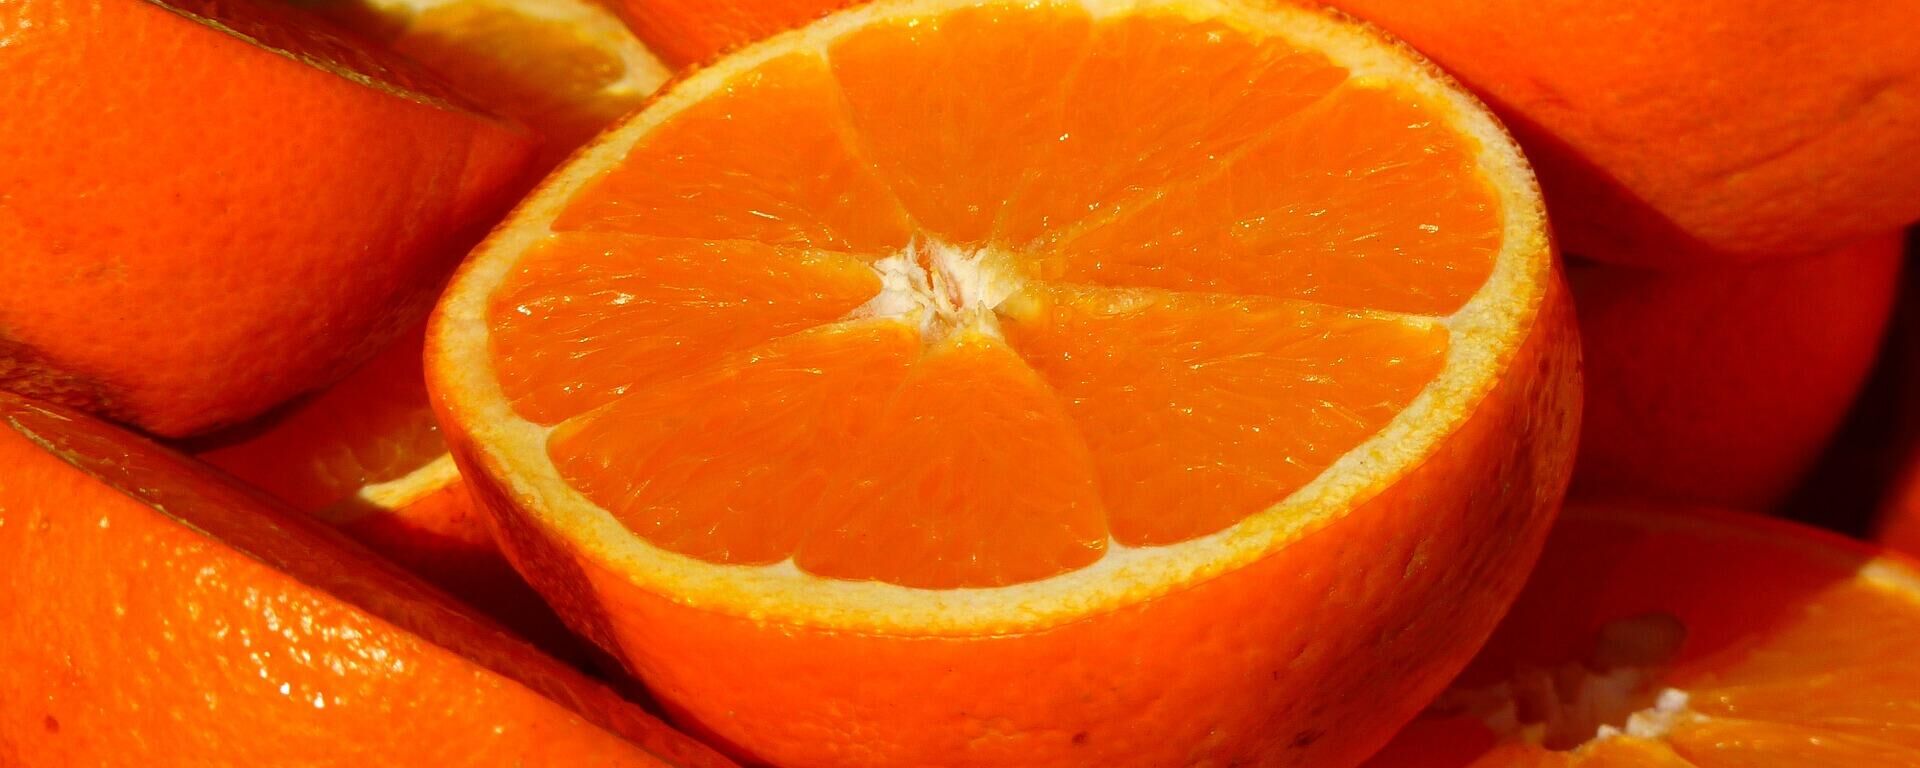 Апельсины - Sputnik Узбекистан, 1920, 21.10.2021